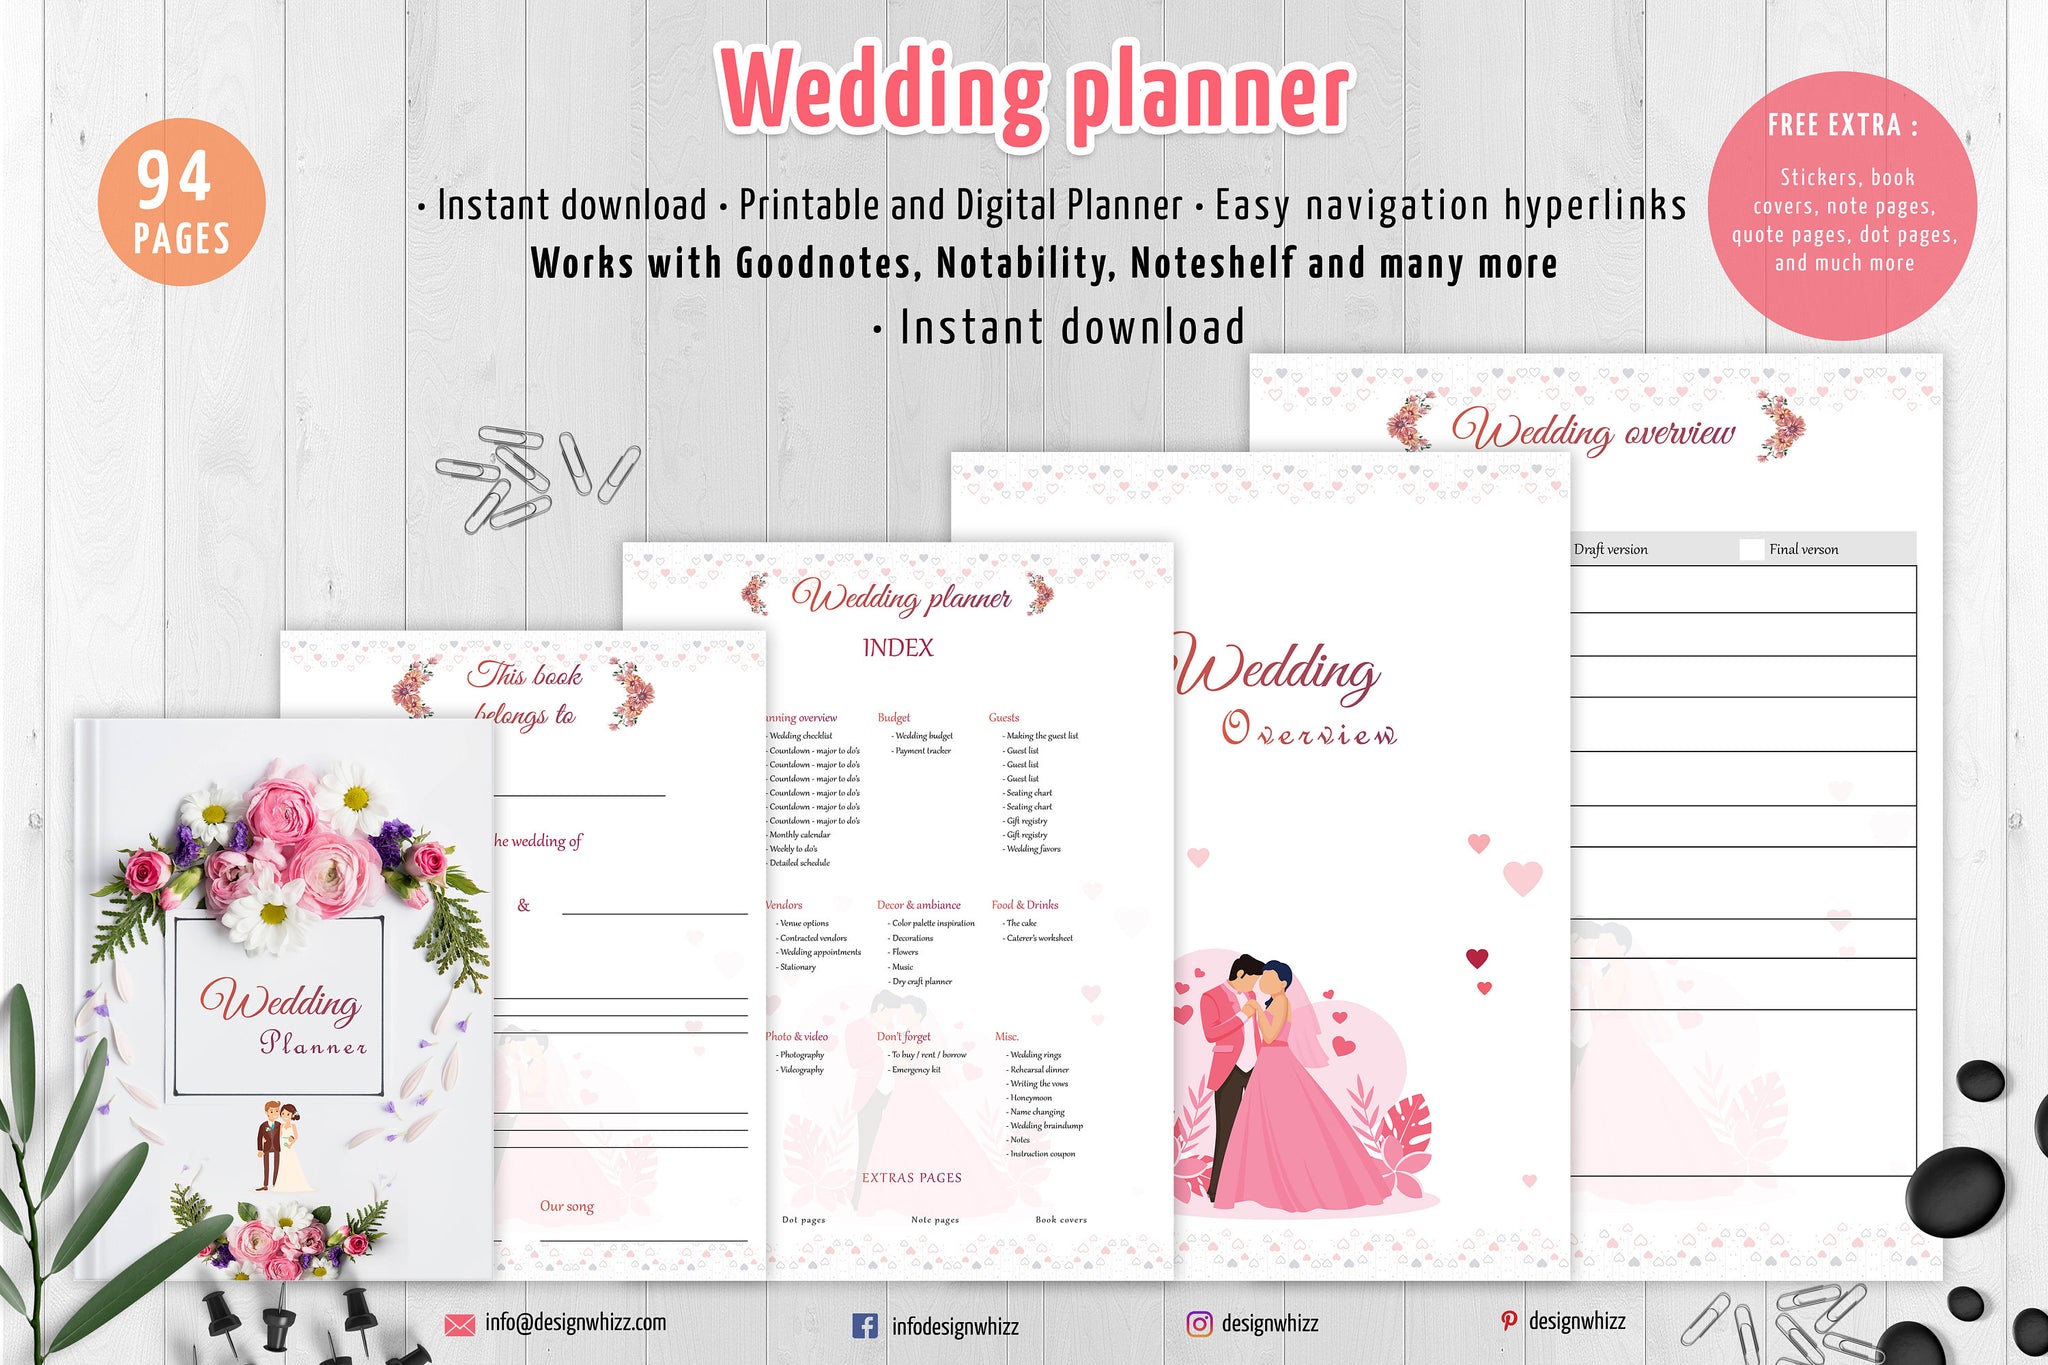 Wedding planner, Wedding planner organizer, checklist wedding planner